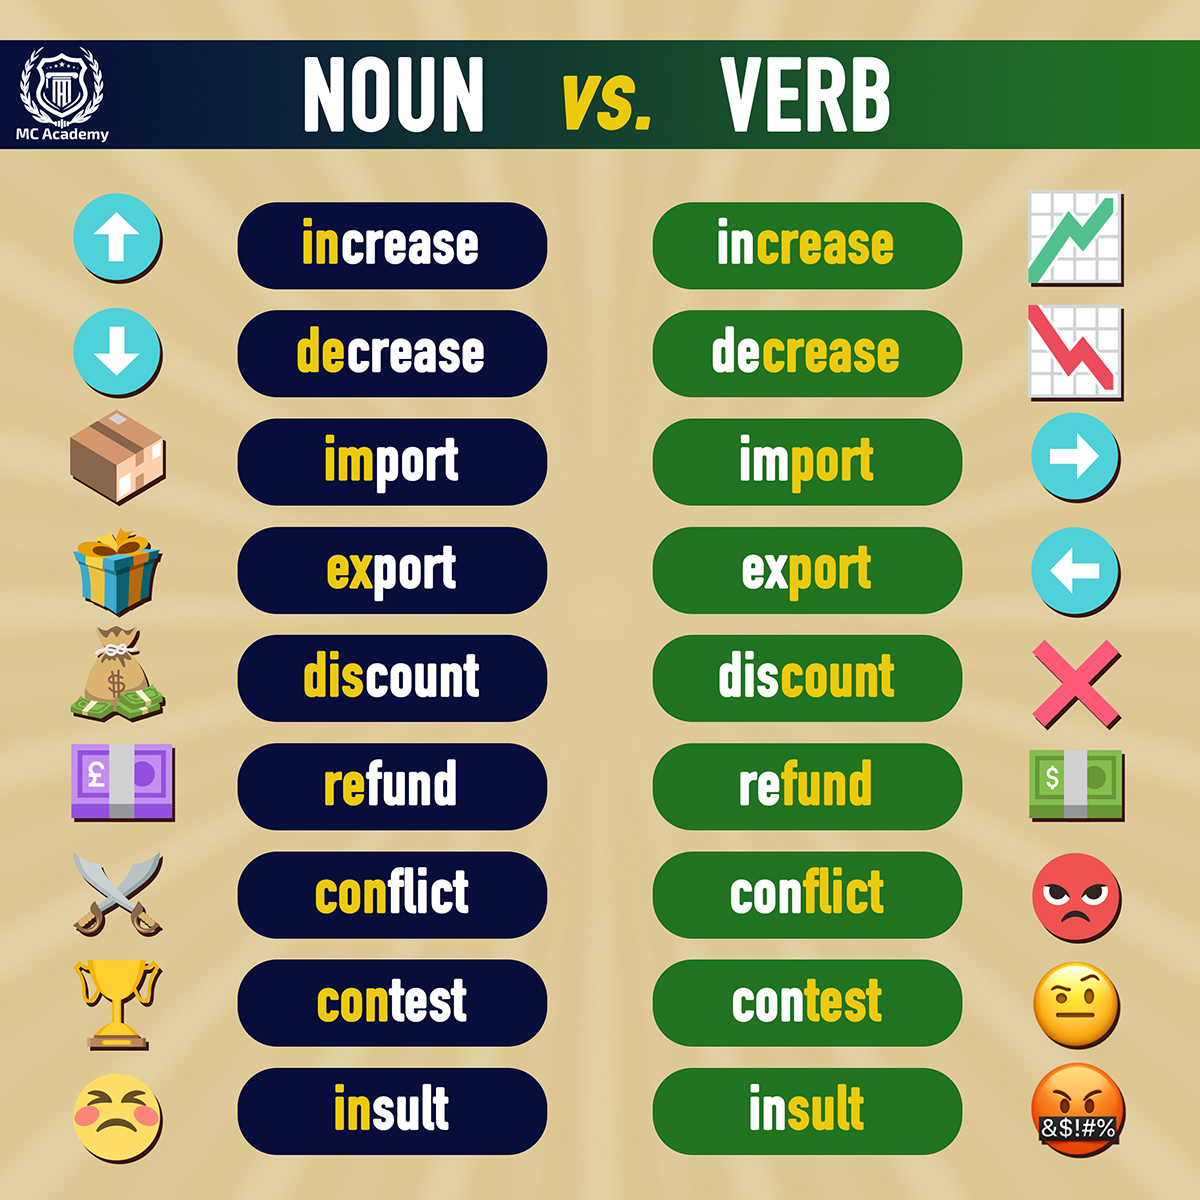 is homework a noun or a verb